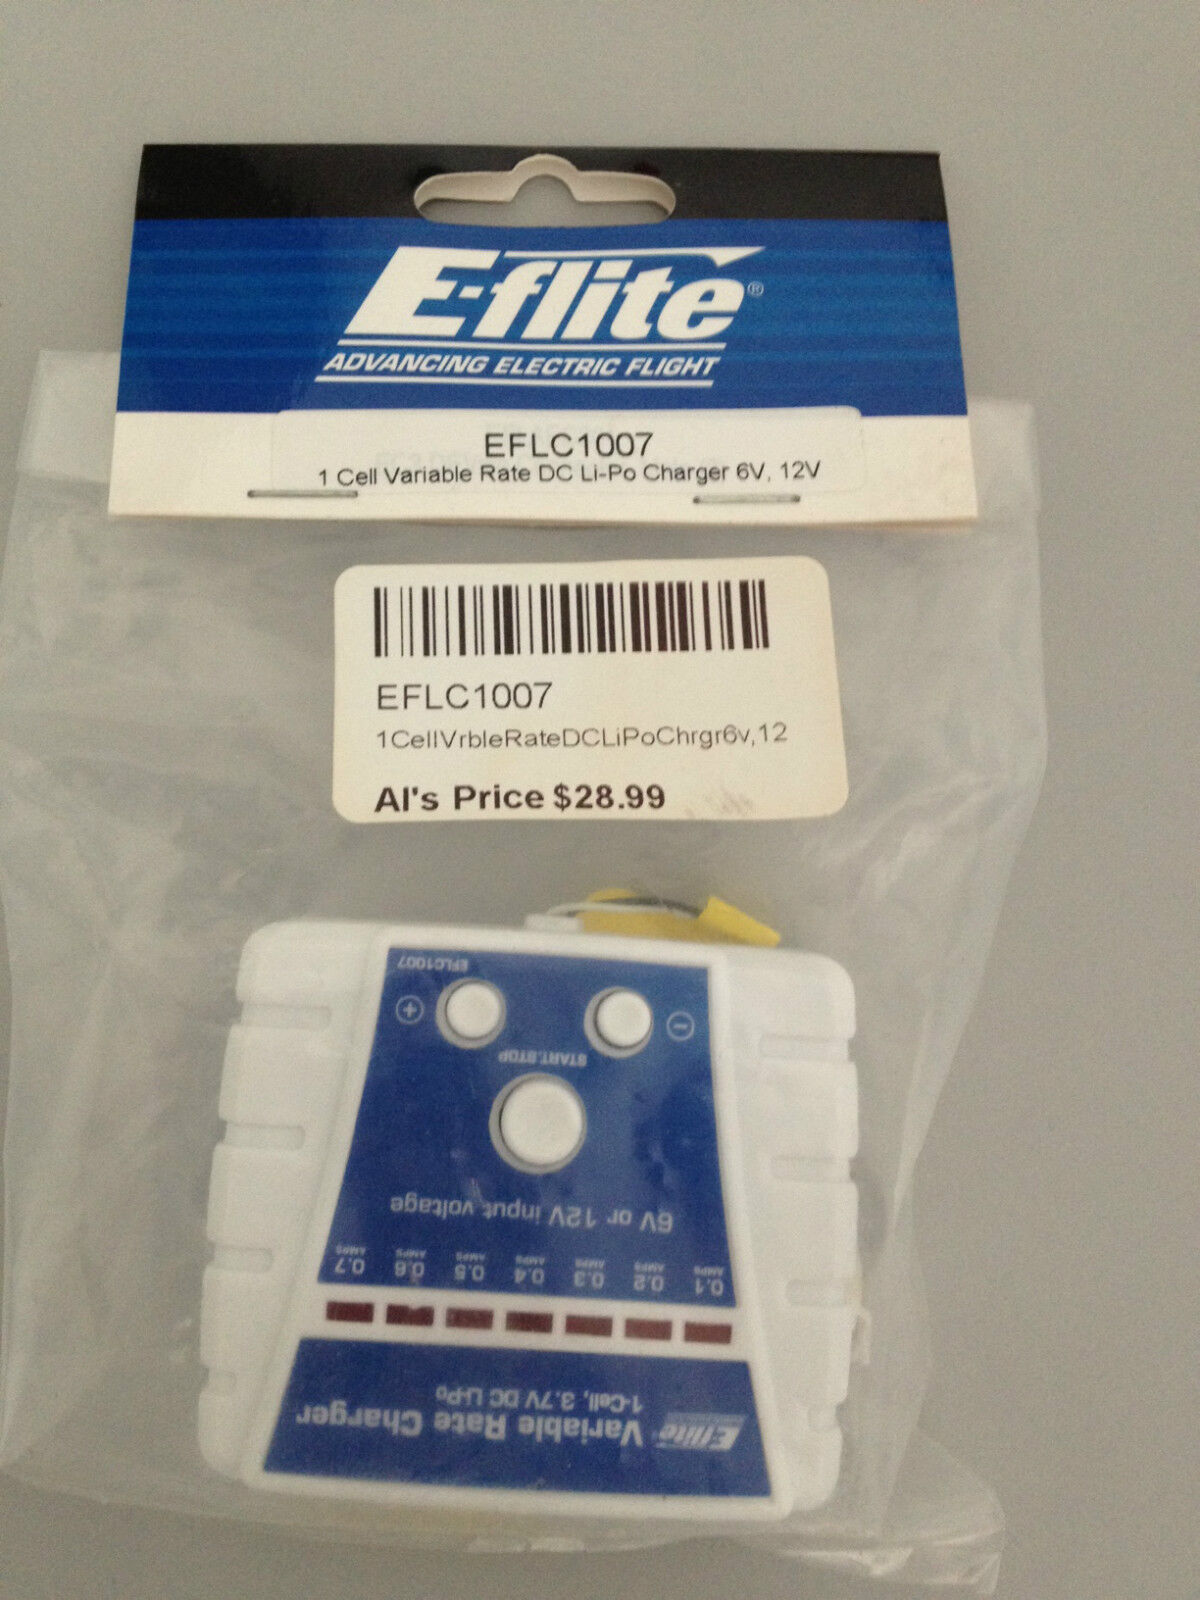 E-Flite 1 Cell Variable Rate DC Li-Po Charger 6V, 12V EFLC1007